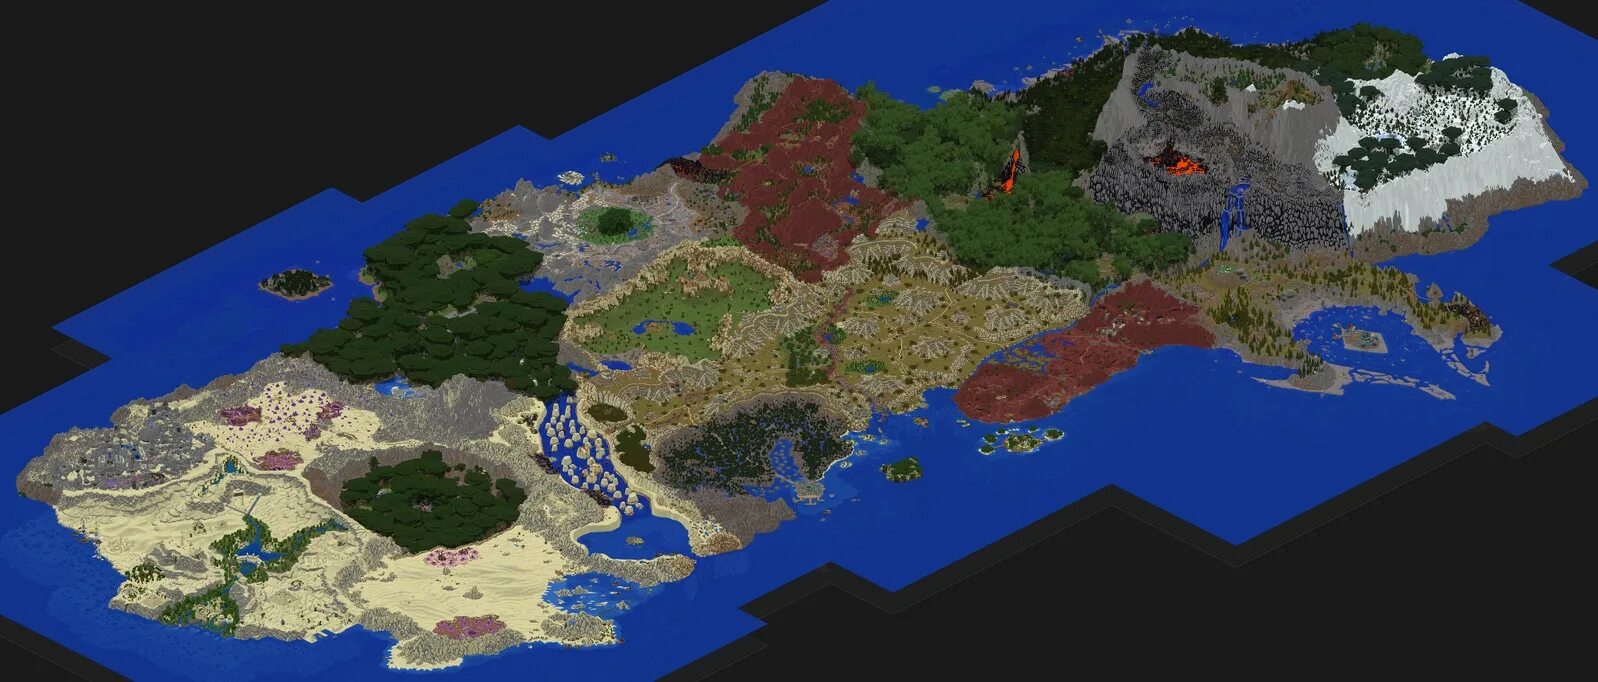 Майнкрафт карта варкрафт. Карта Азерота в майнкрафт. Warcraft 3 в майнкрафт. Minecraft Warcraft 3 Map.